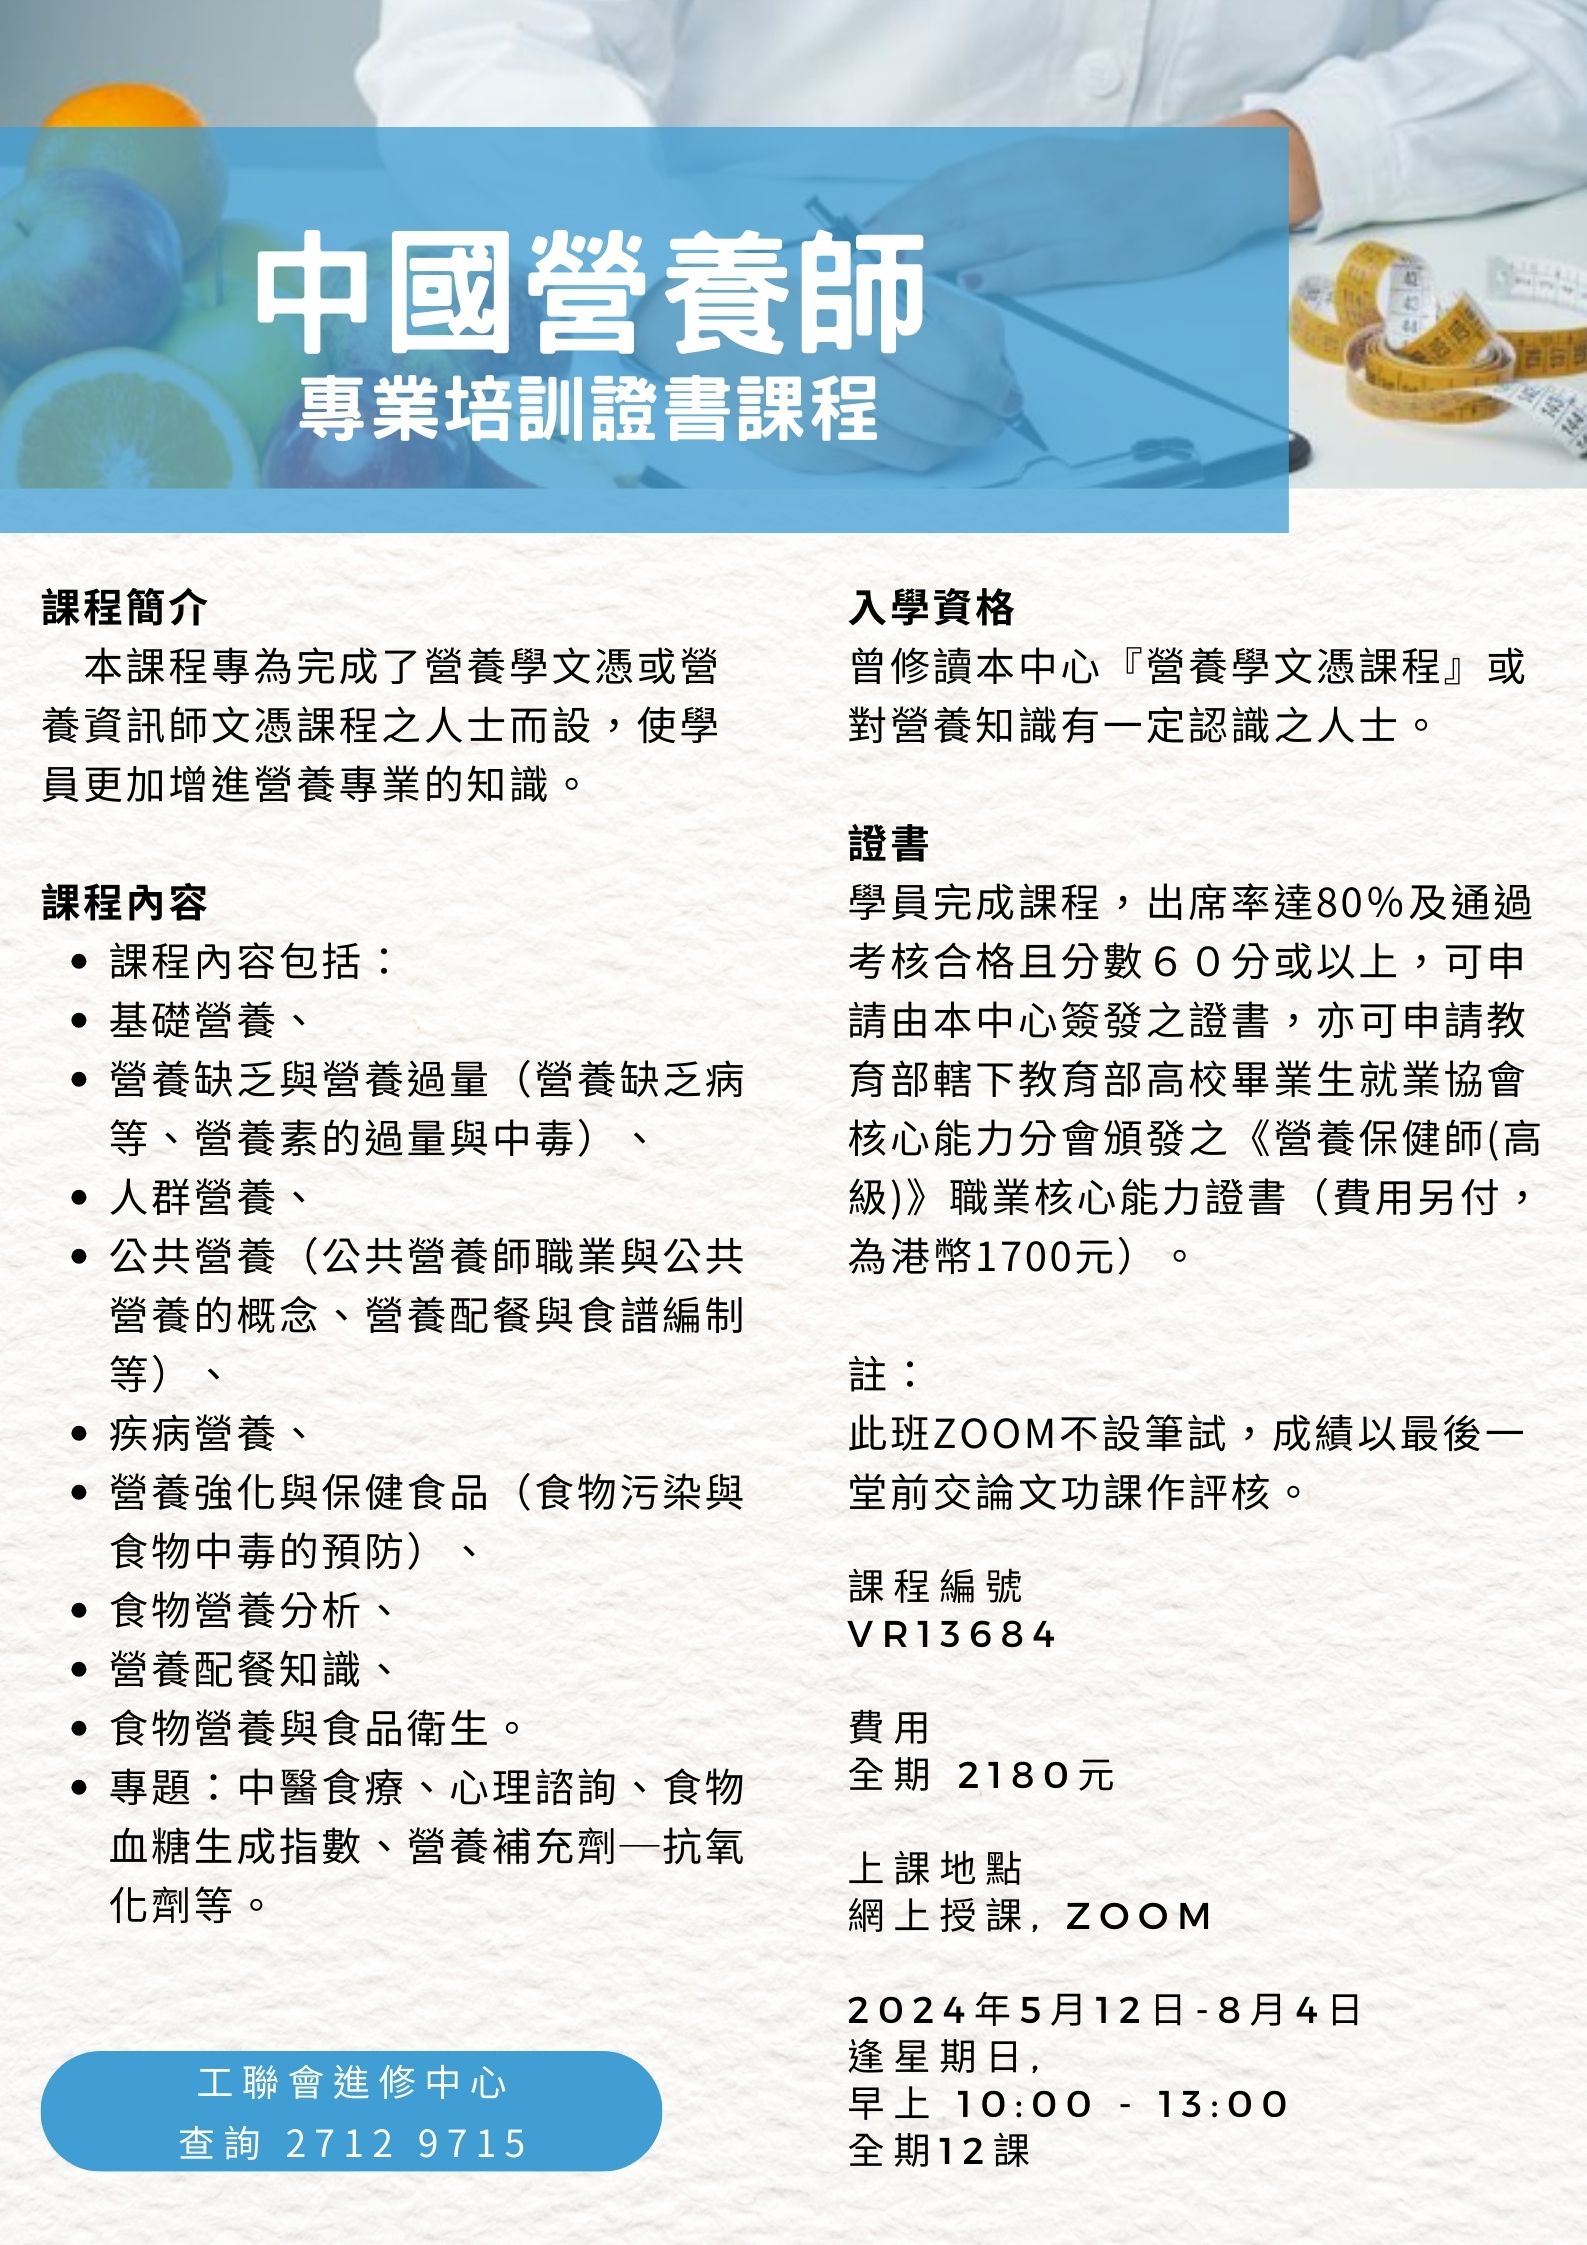 VR13684 - 中國營養師專業培訓證書.jpg